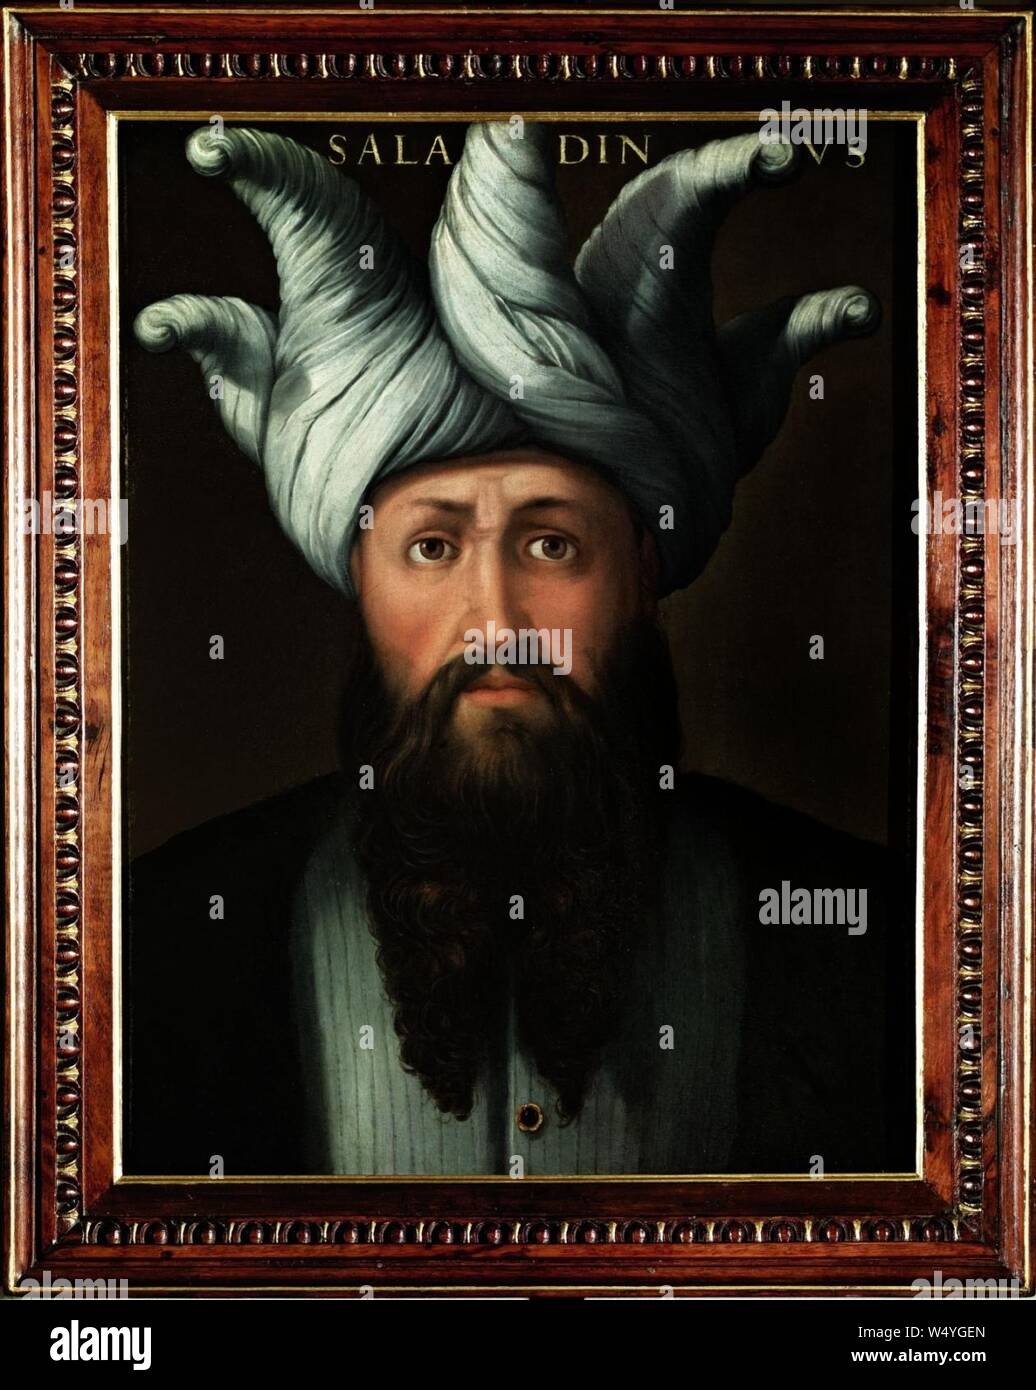 Cristofano dell'Altissimo Saladin, der Sultan von Aegypten. Stockfoto